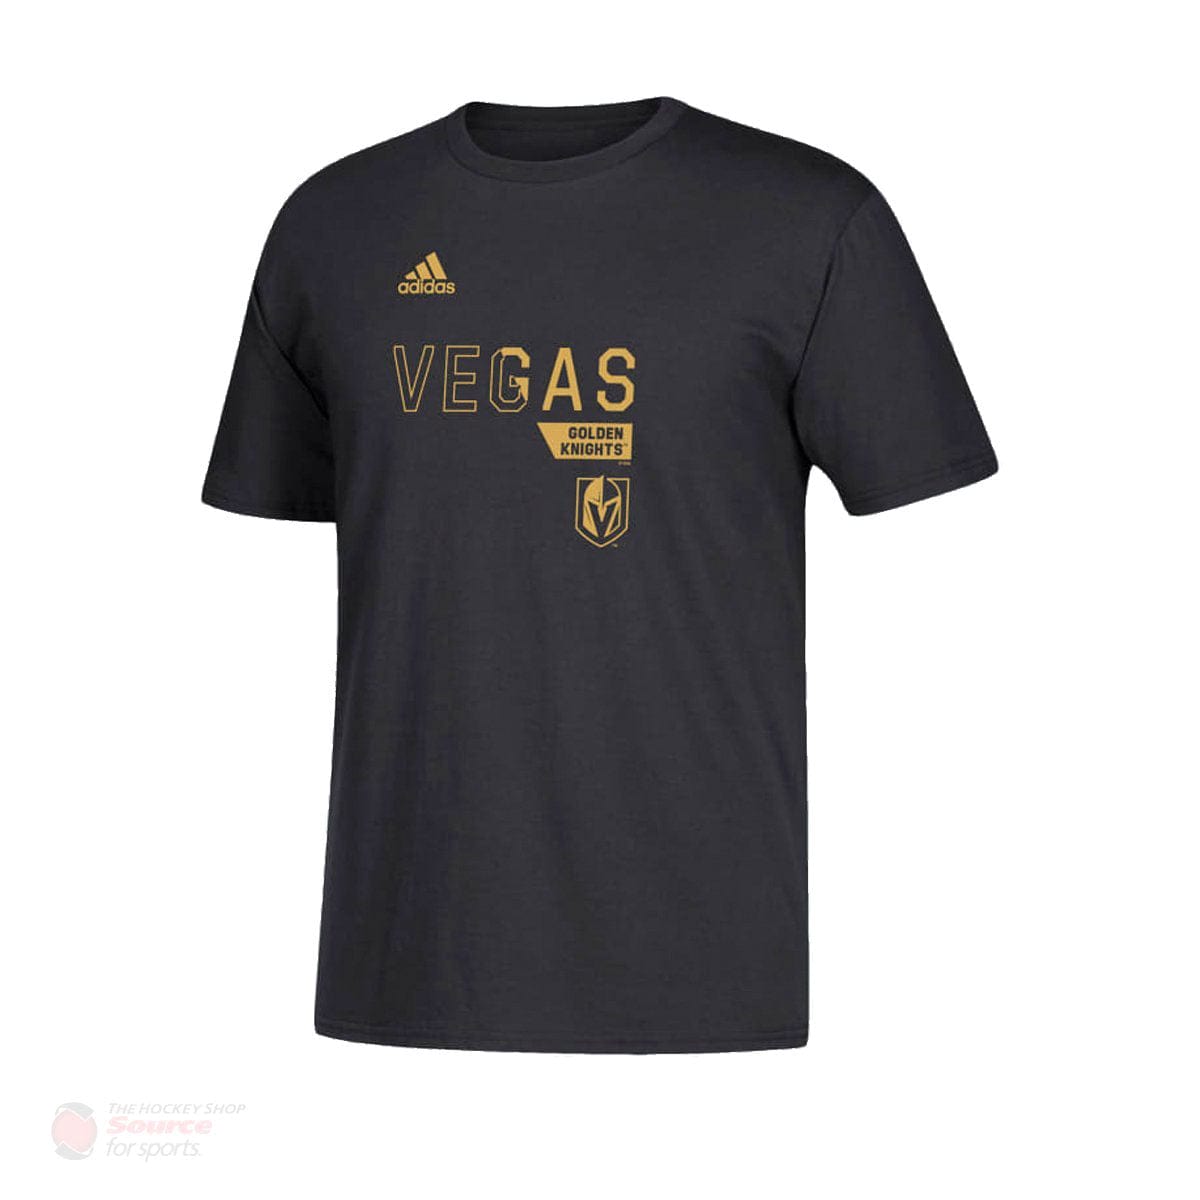 Vegas Golden Knights Adidas Locker Division Mens Shirt